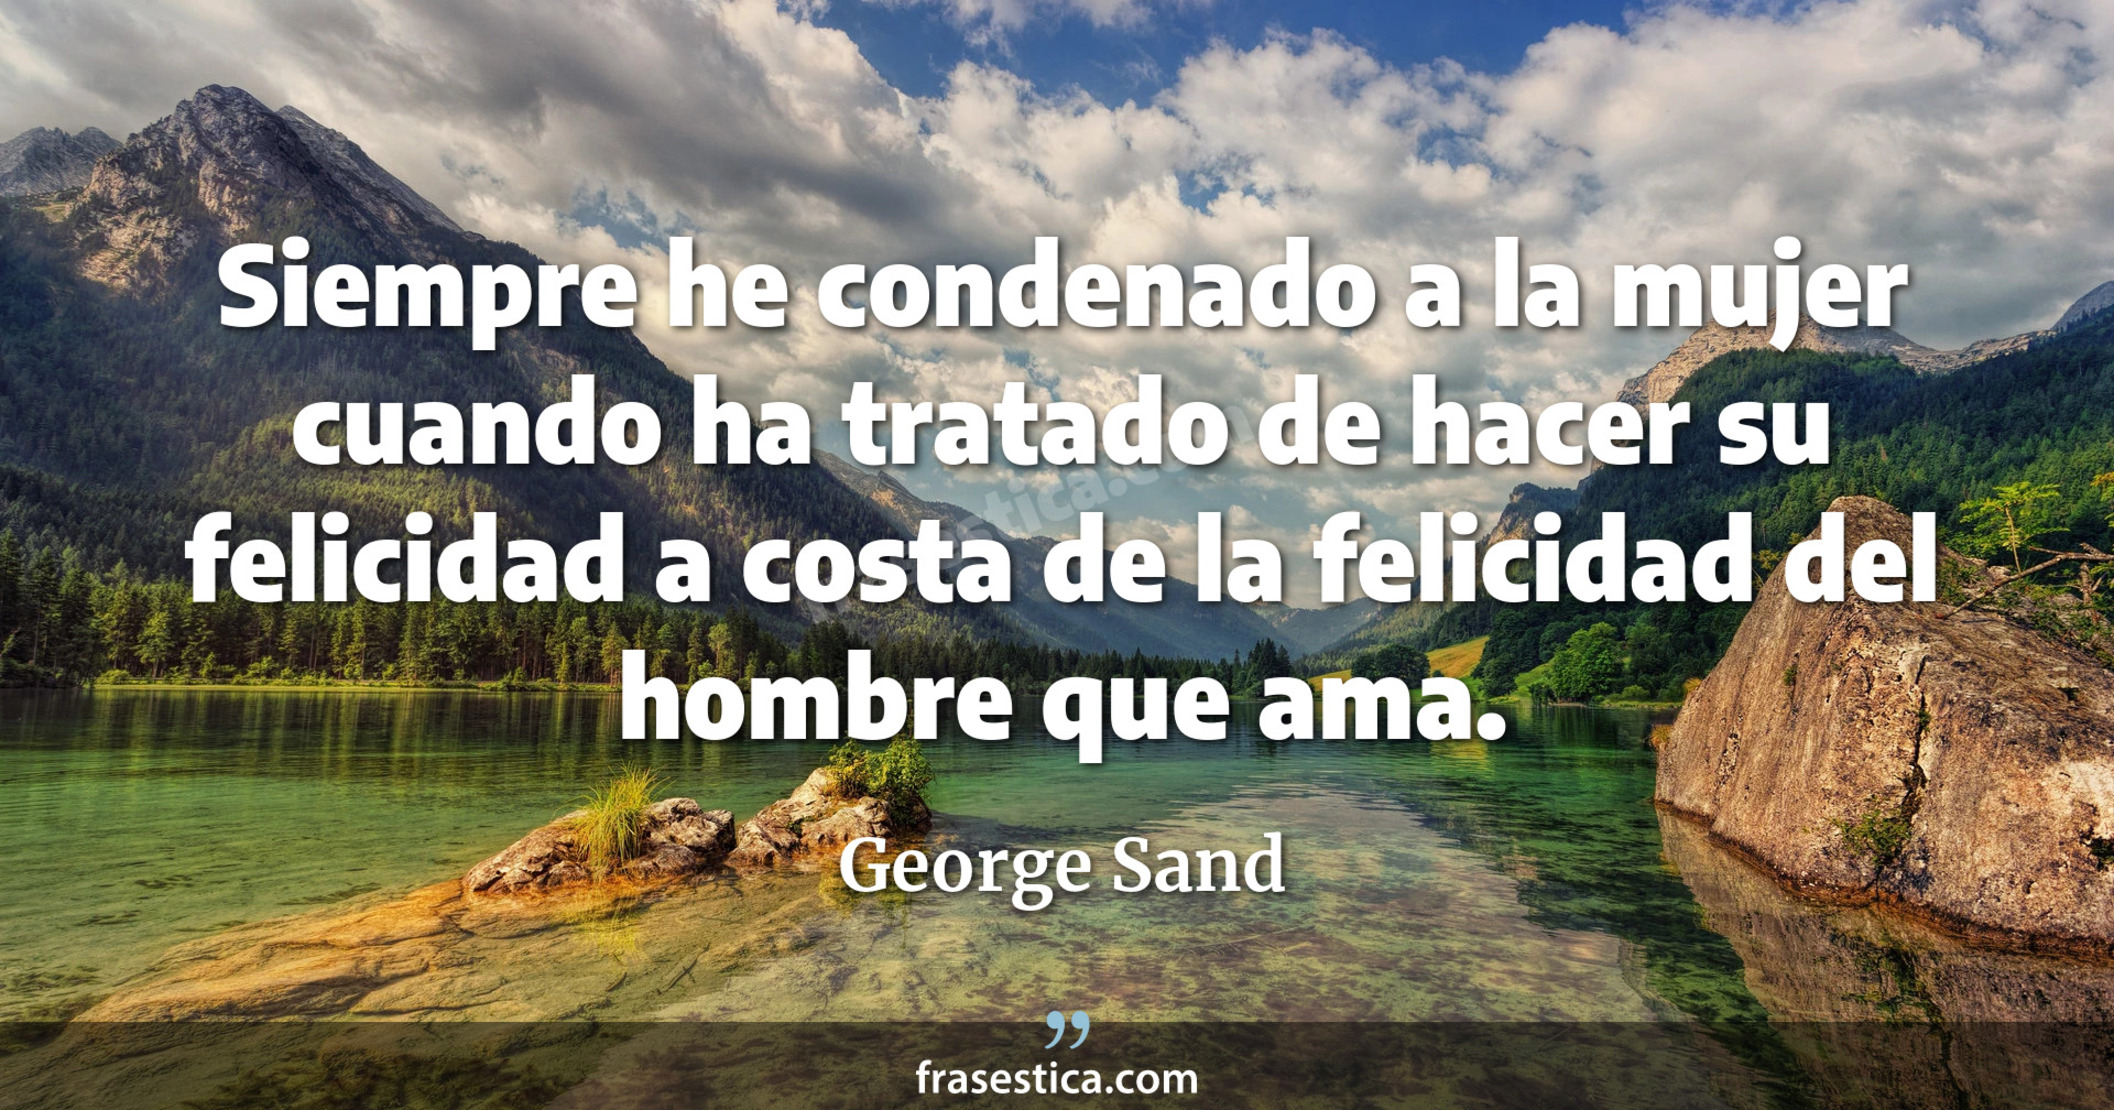 Siempre he condenado a la mujer cuando ha tratado de hacer su felicidad a costa de la felicidad del hombre que ama. - George Sand